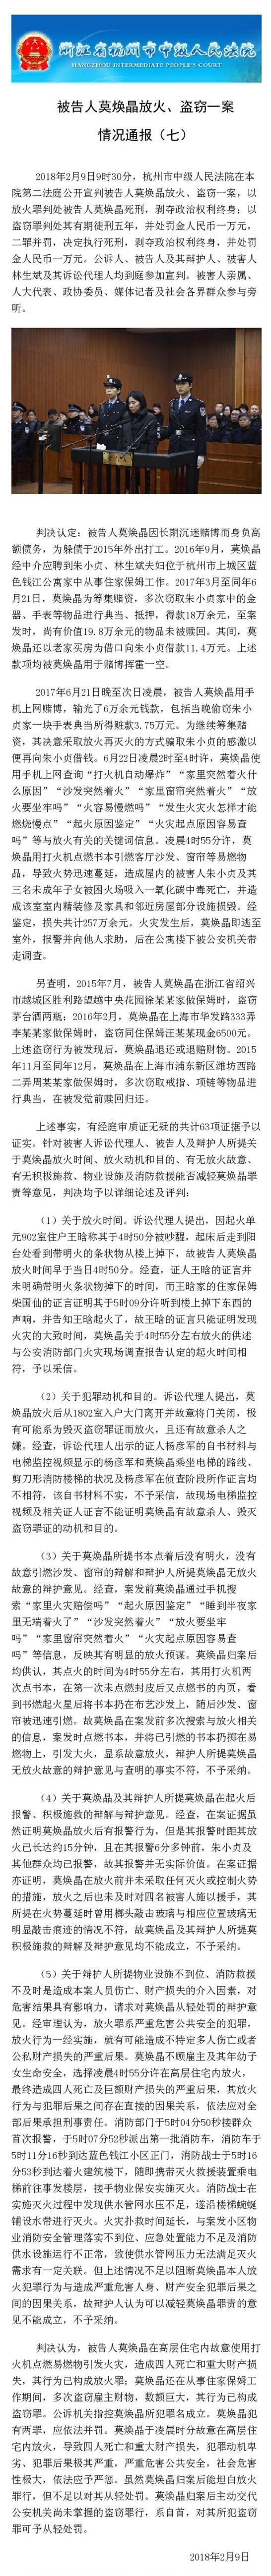 杭州保姆纵火案全程回顾：致雇主一家四口遇难被判死刑